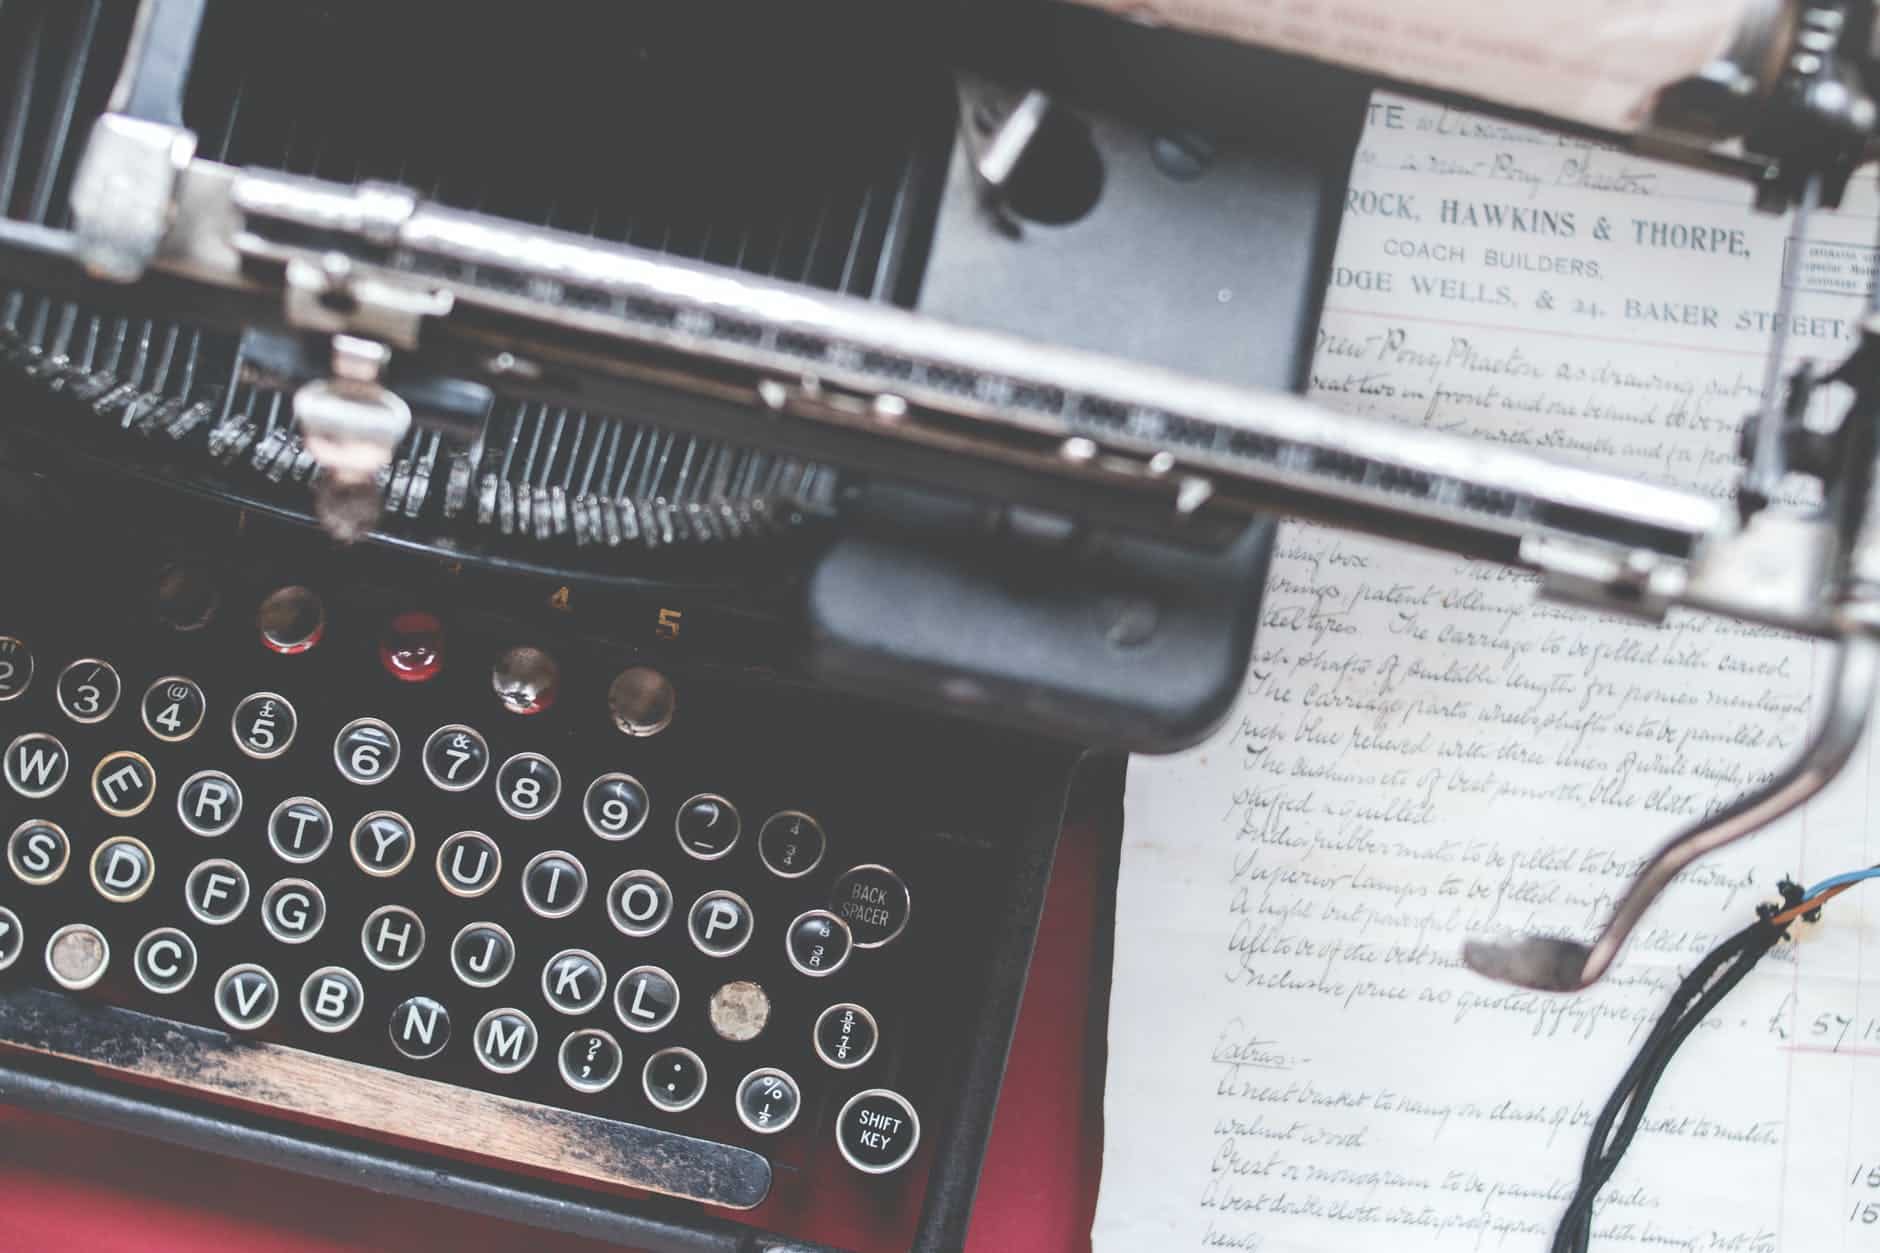 close up photo of black typewriter